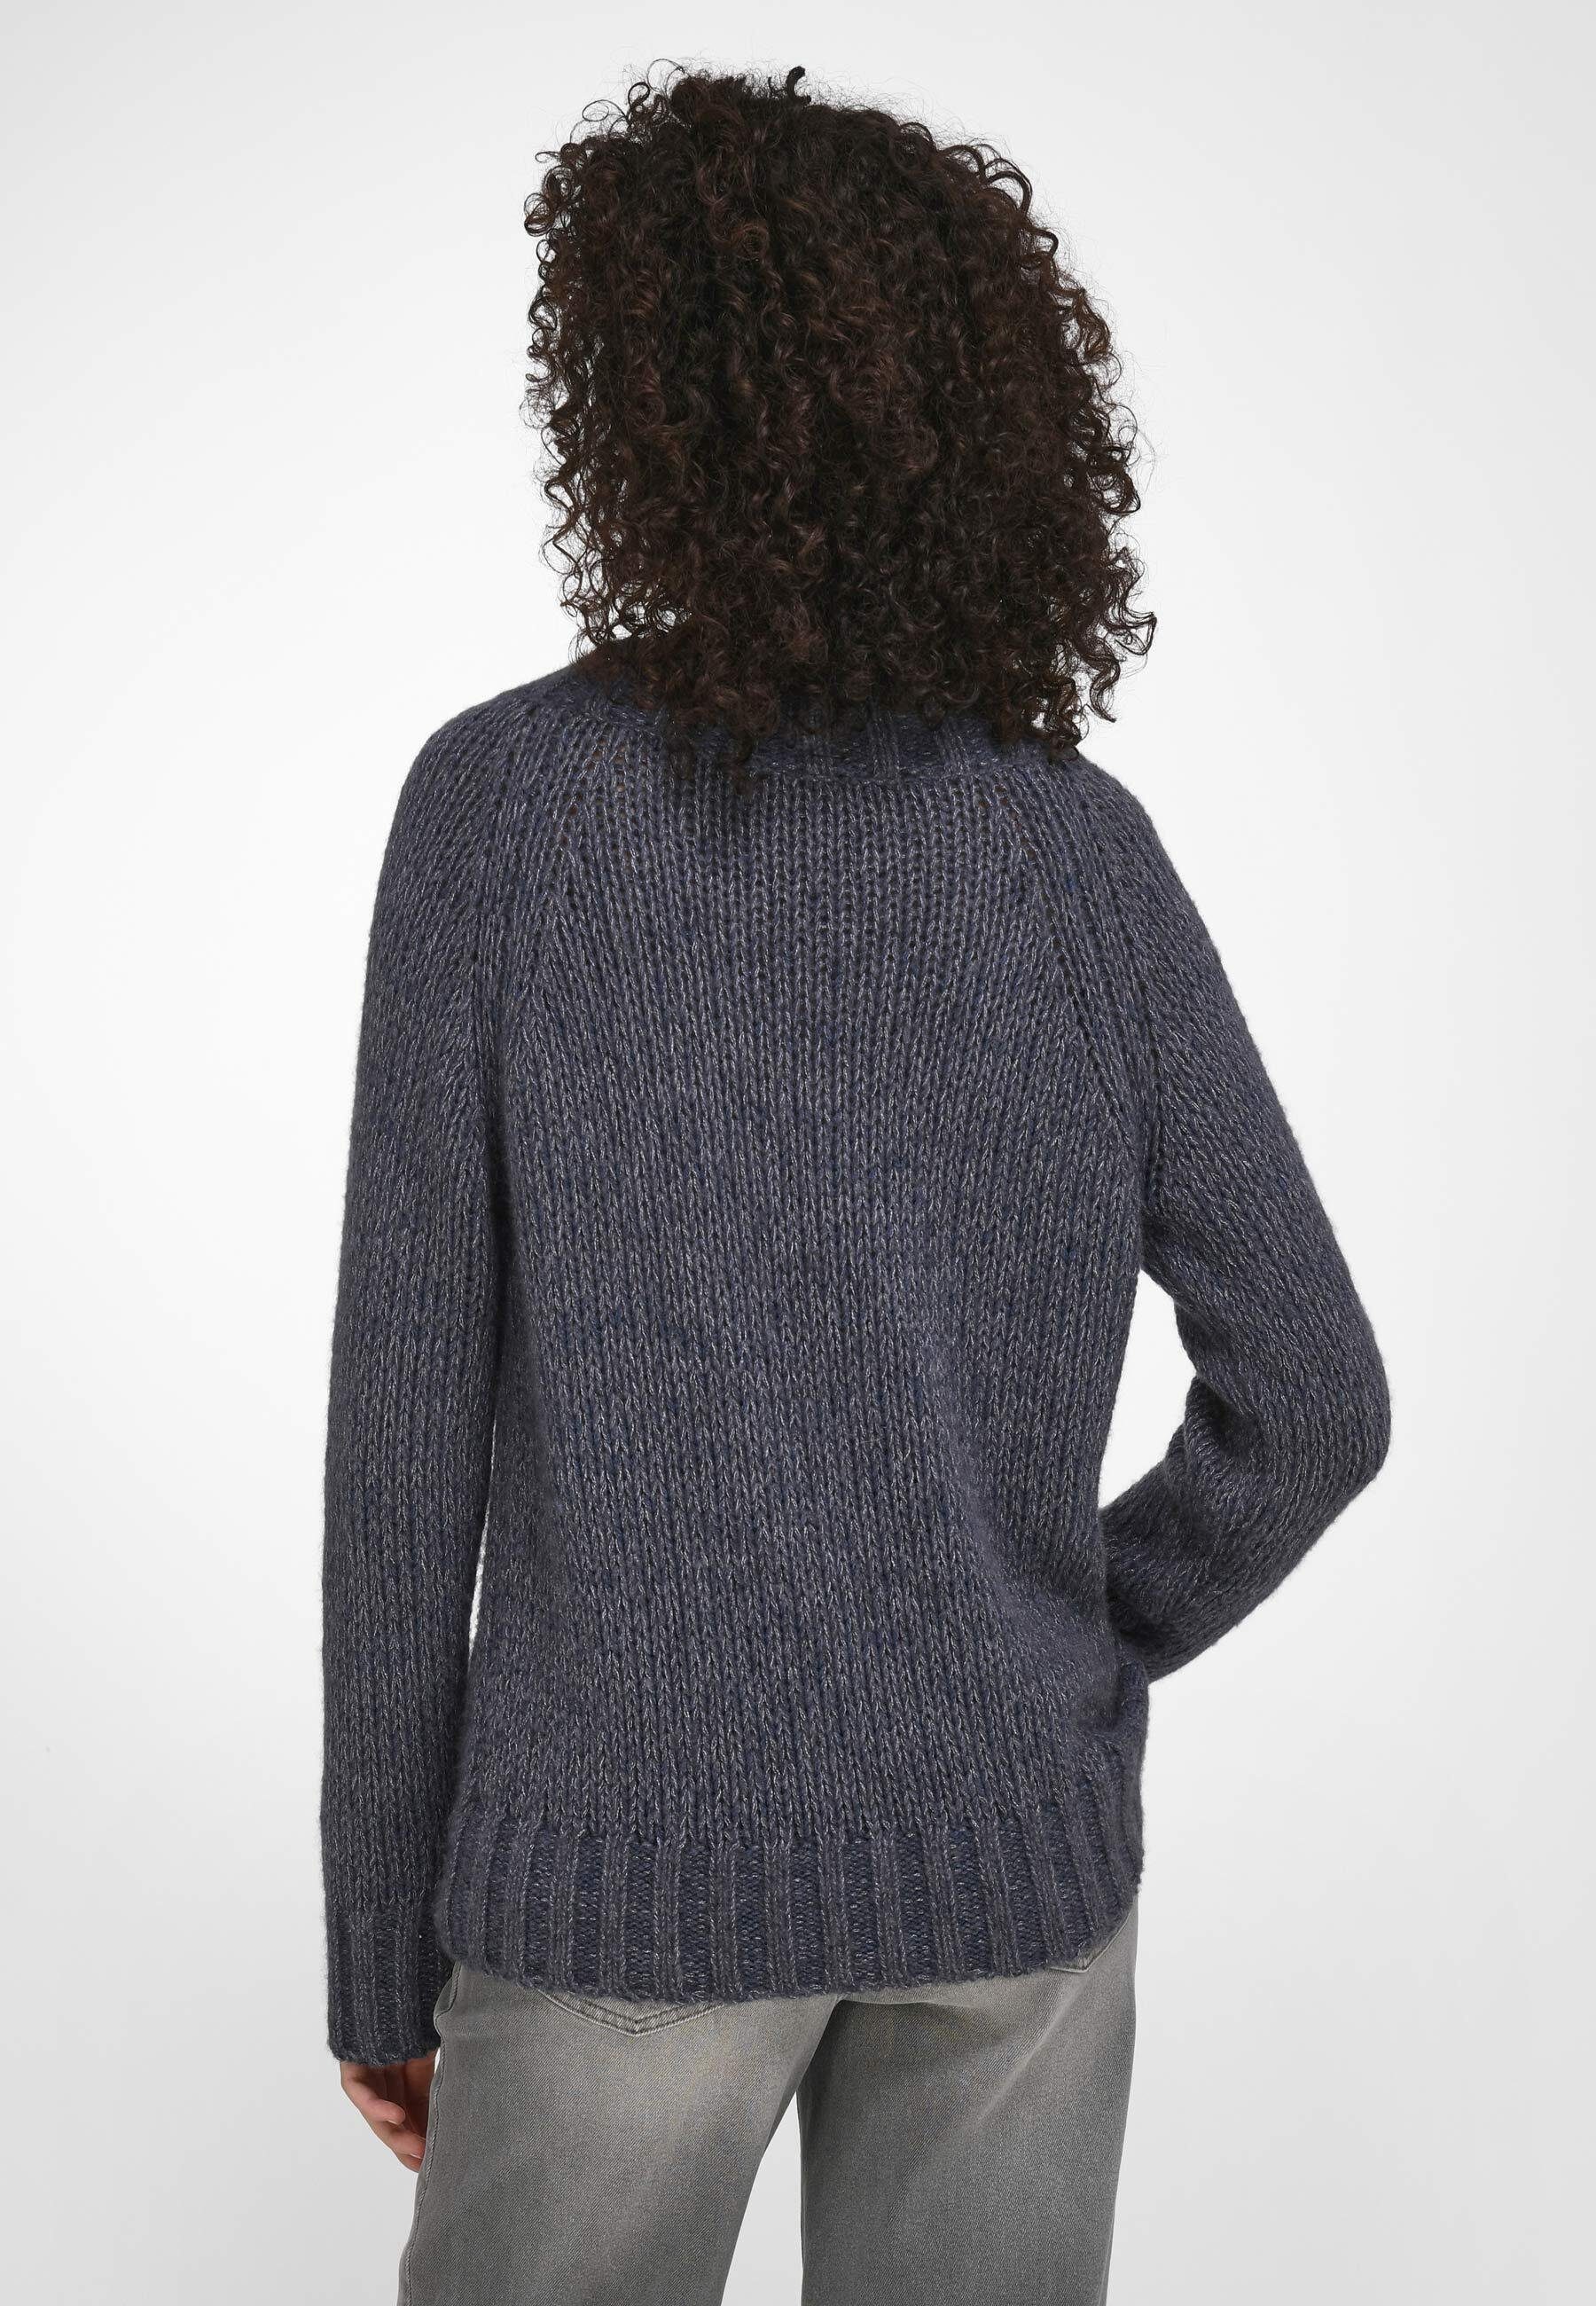 Strickpullover jeansblau-melange wool include